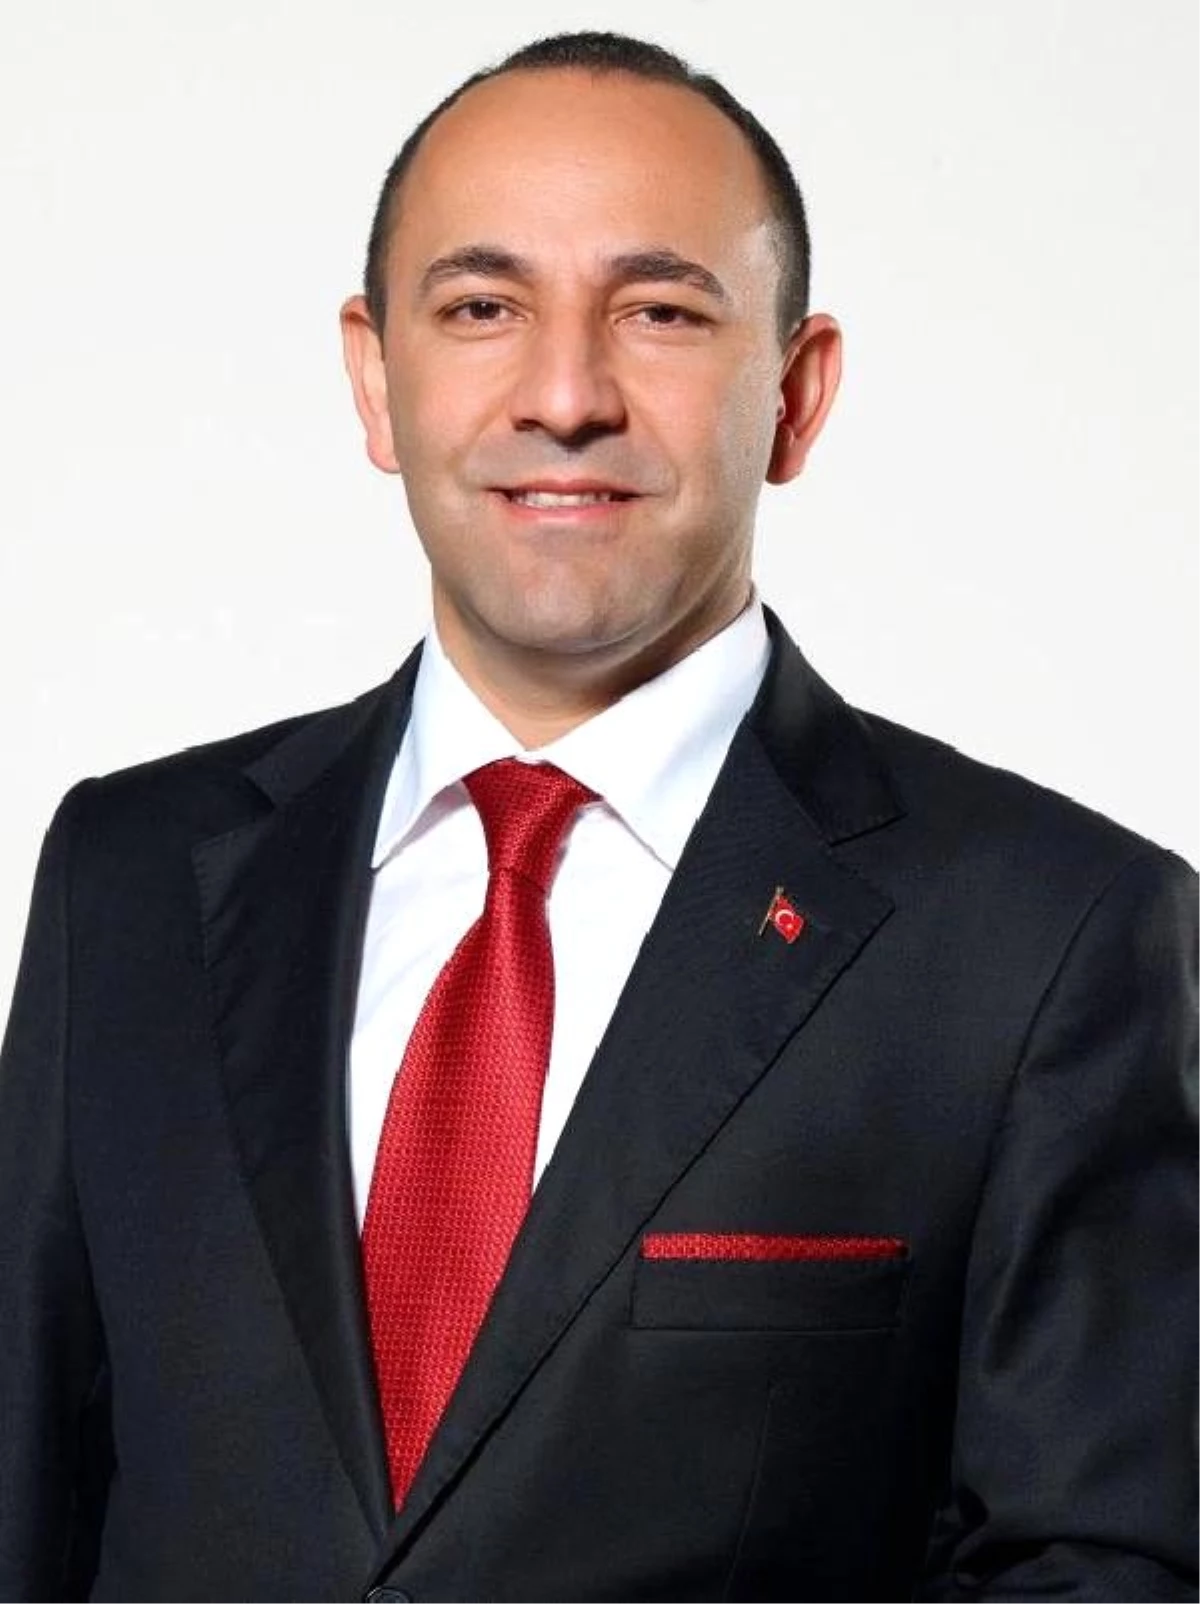 Urla Belediyesi eski Başkanı Oğuz\'un iddianamesinde FETÖ bağlantılarına yer verildi